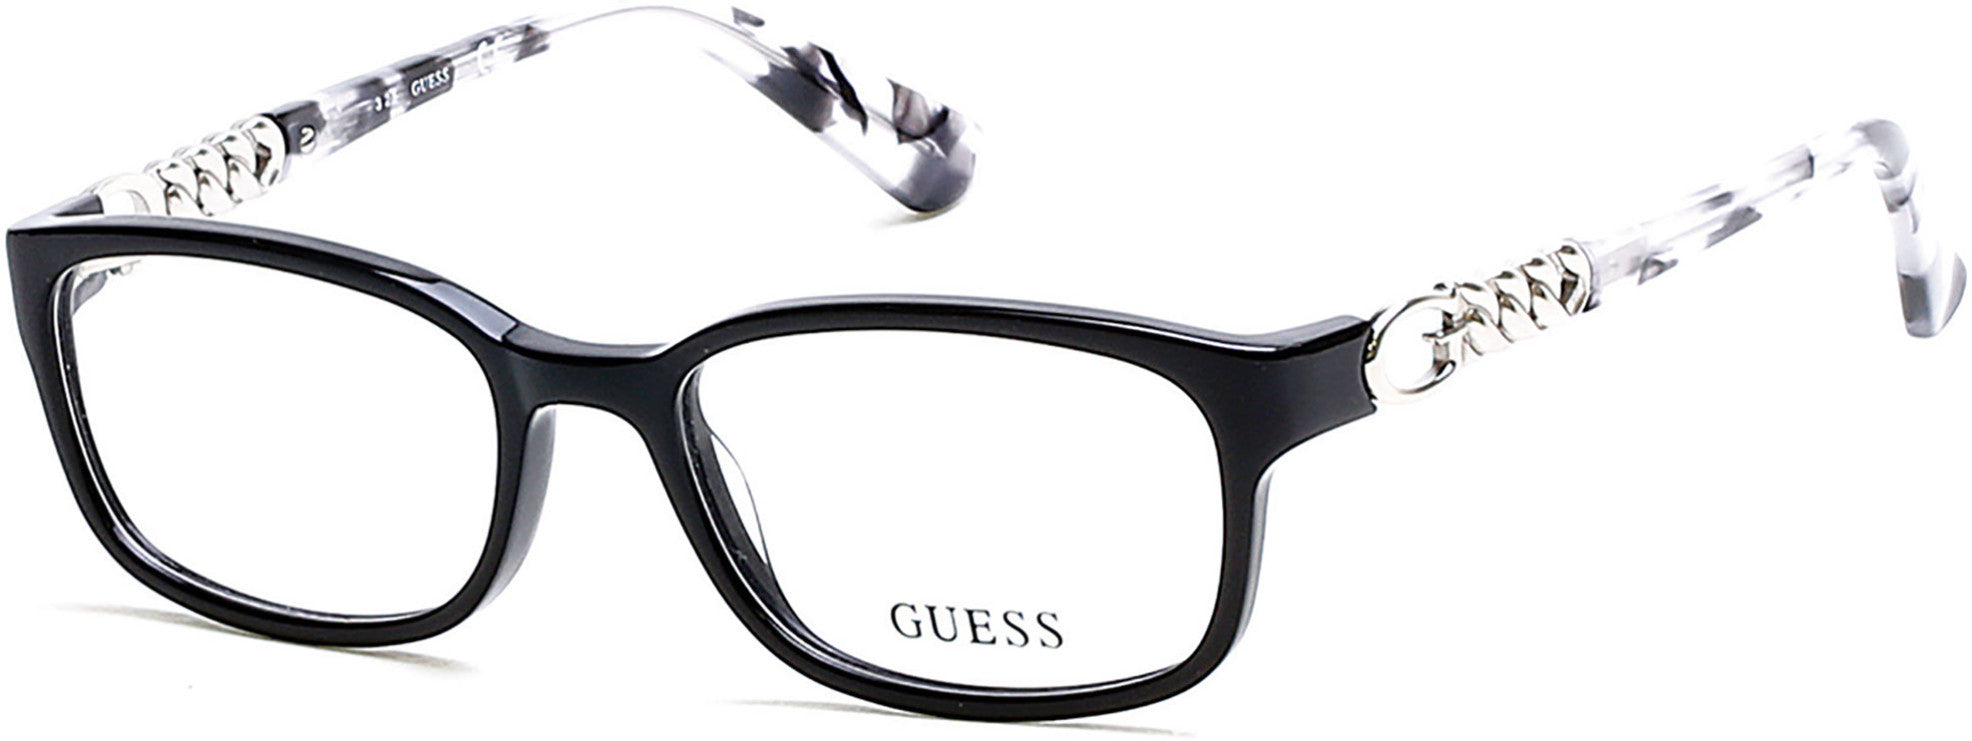 Guess GU2558 Geometric Eyeglasses 001-001 - Shiny Black